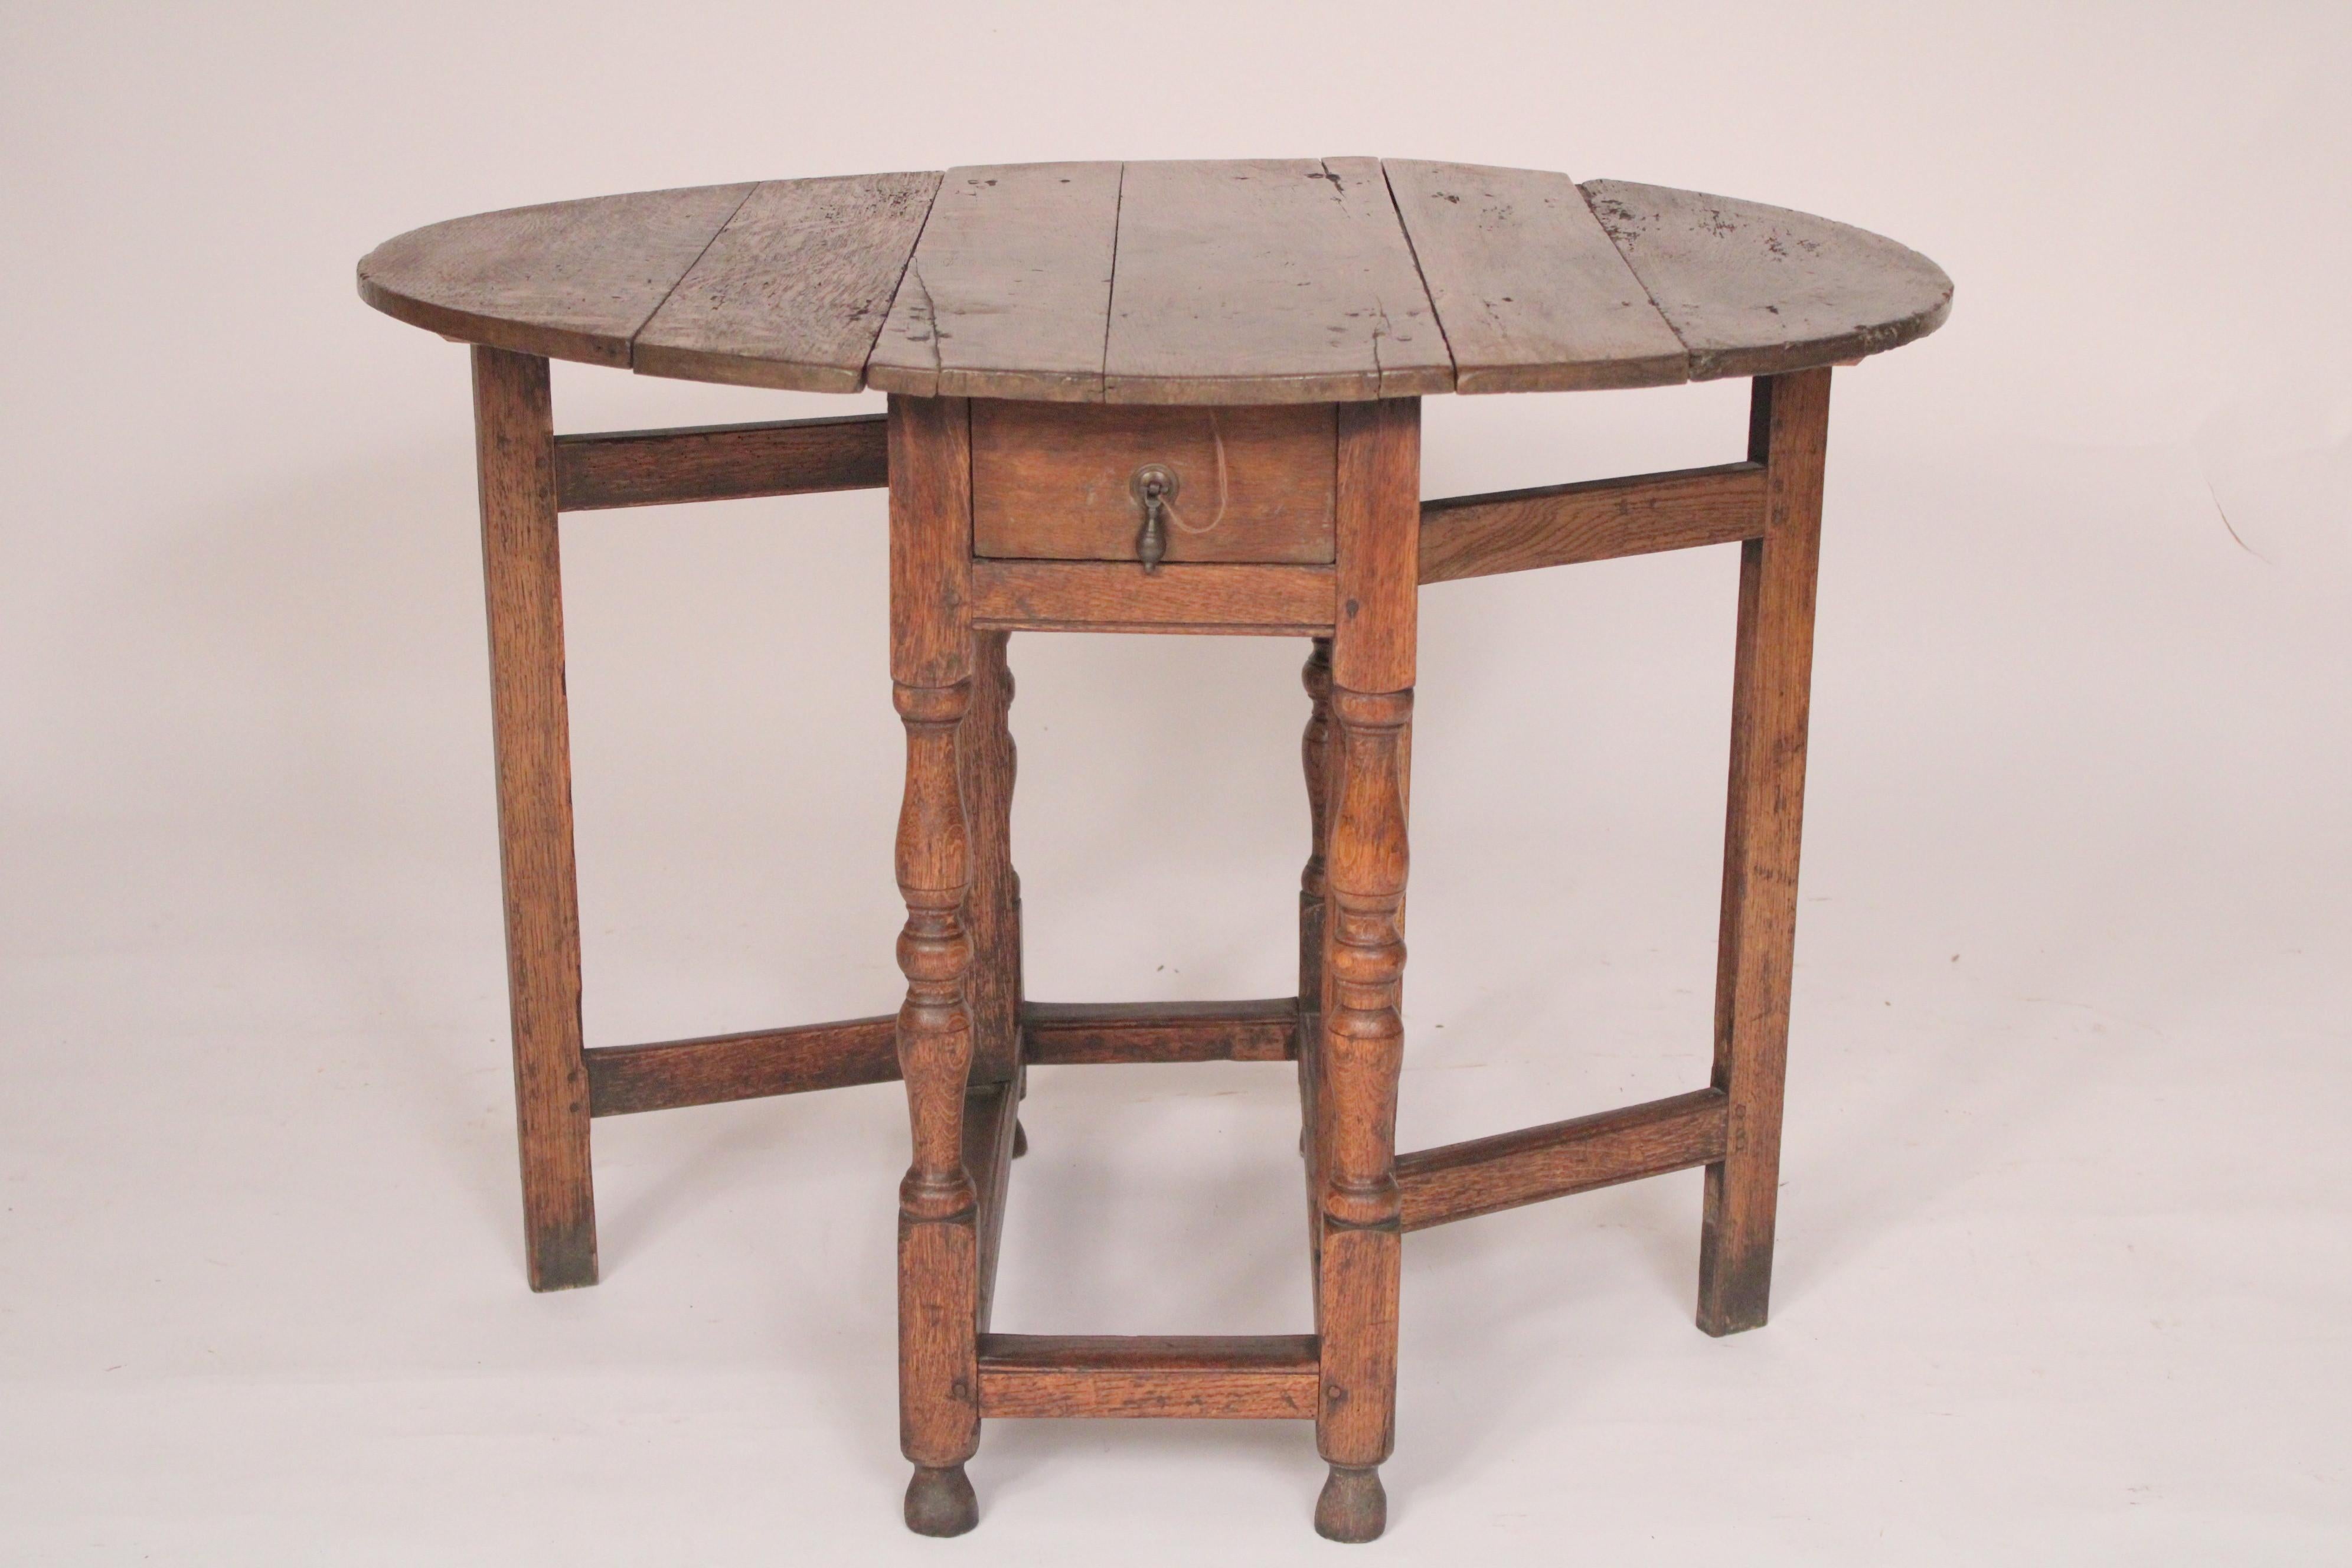 Englischer Eichenholztisch aus dem 18. (18. Jahrhundert und früher)